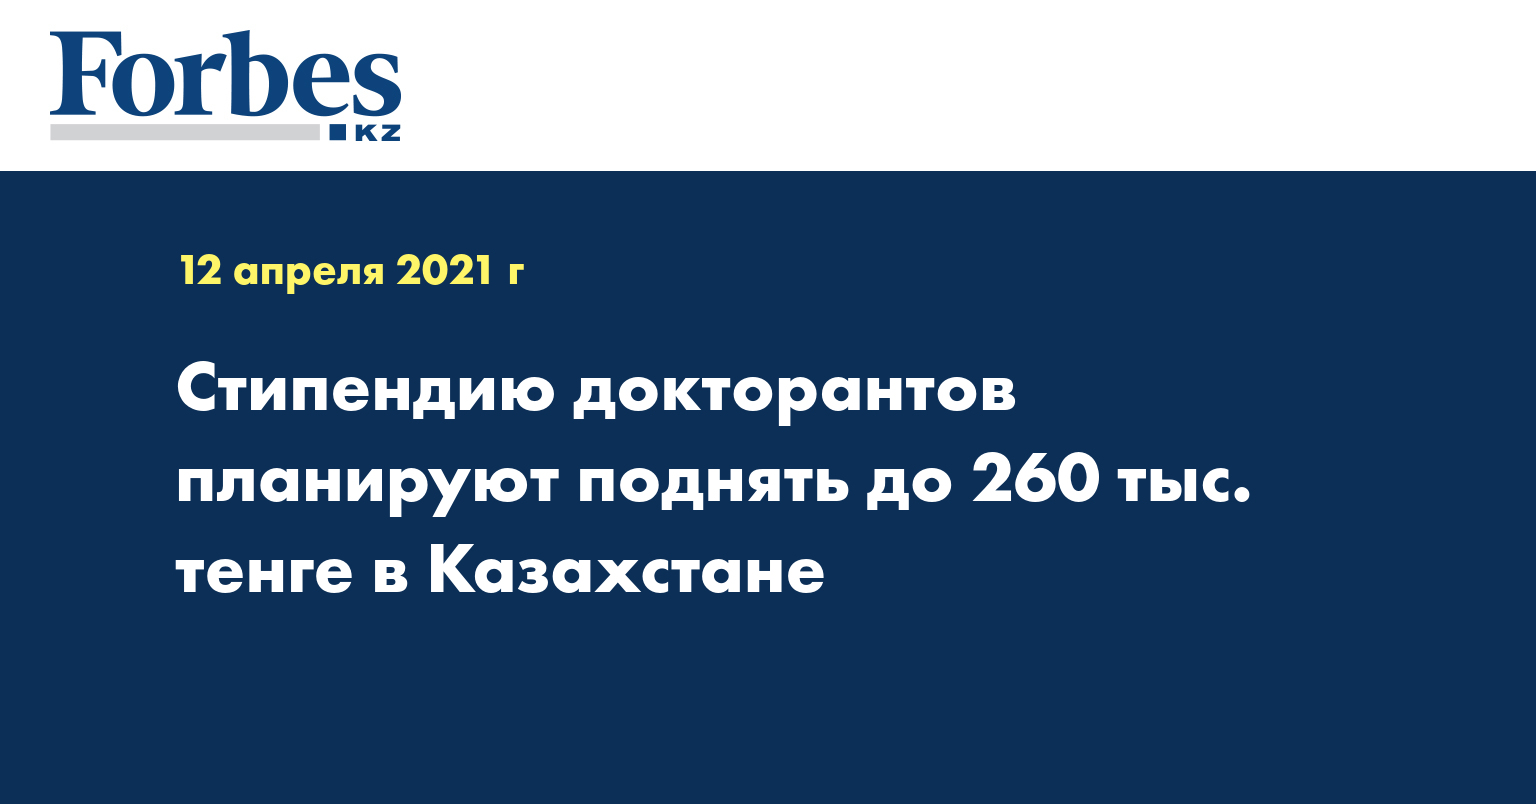 Стипендию докторантов  планируют поднять до 260 тыс. тенге в Казахстане